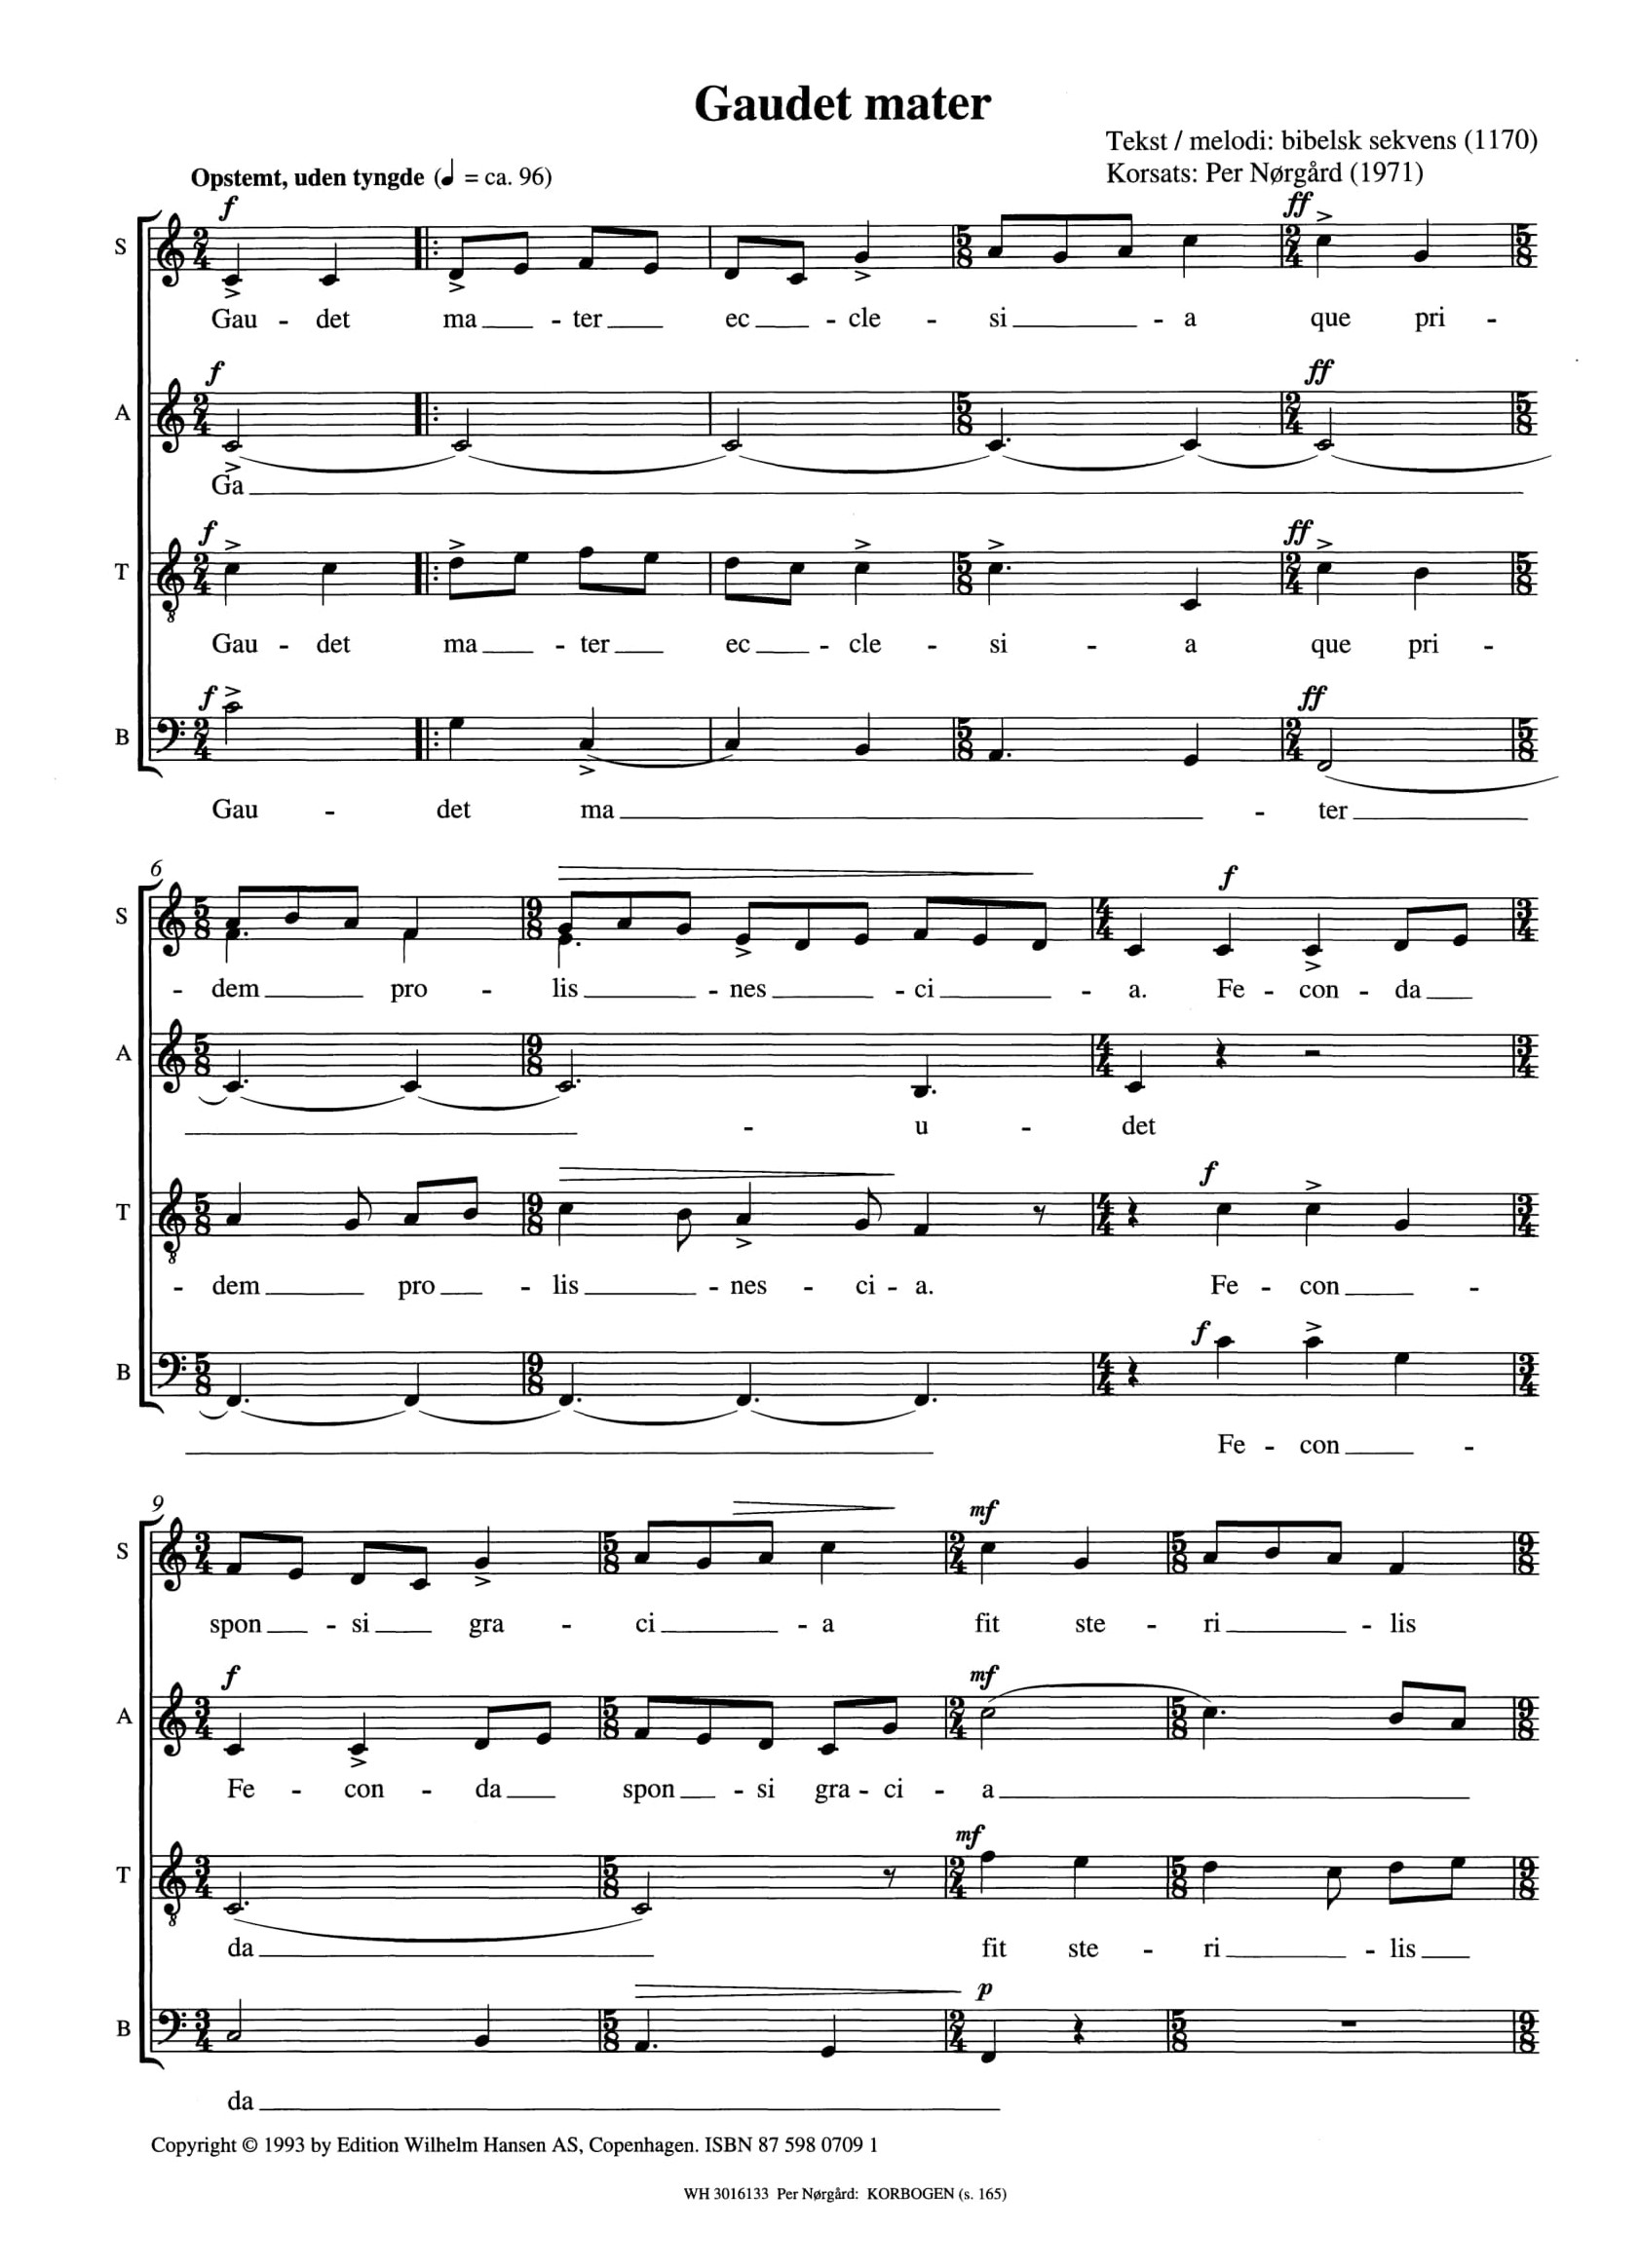 Per Nørgård Bibelsk Sekvens: Gaudet Mater: SATB: Vocal Score